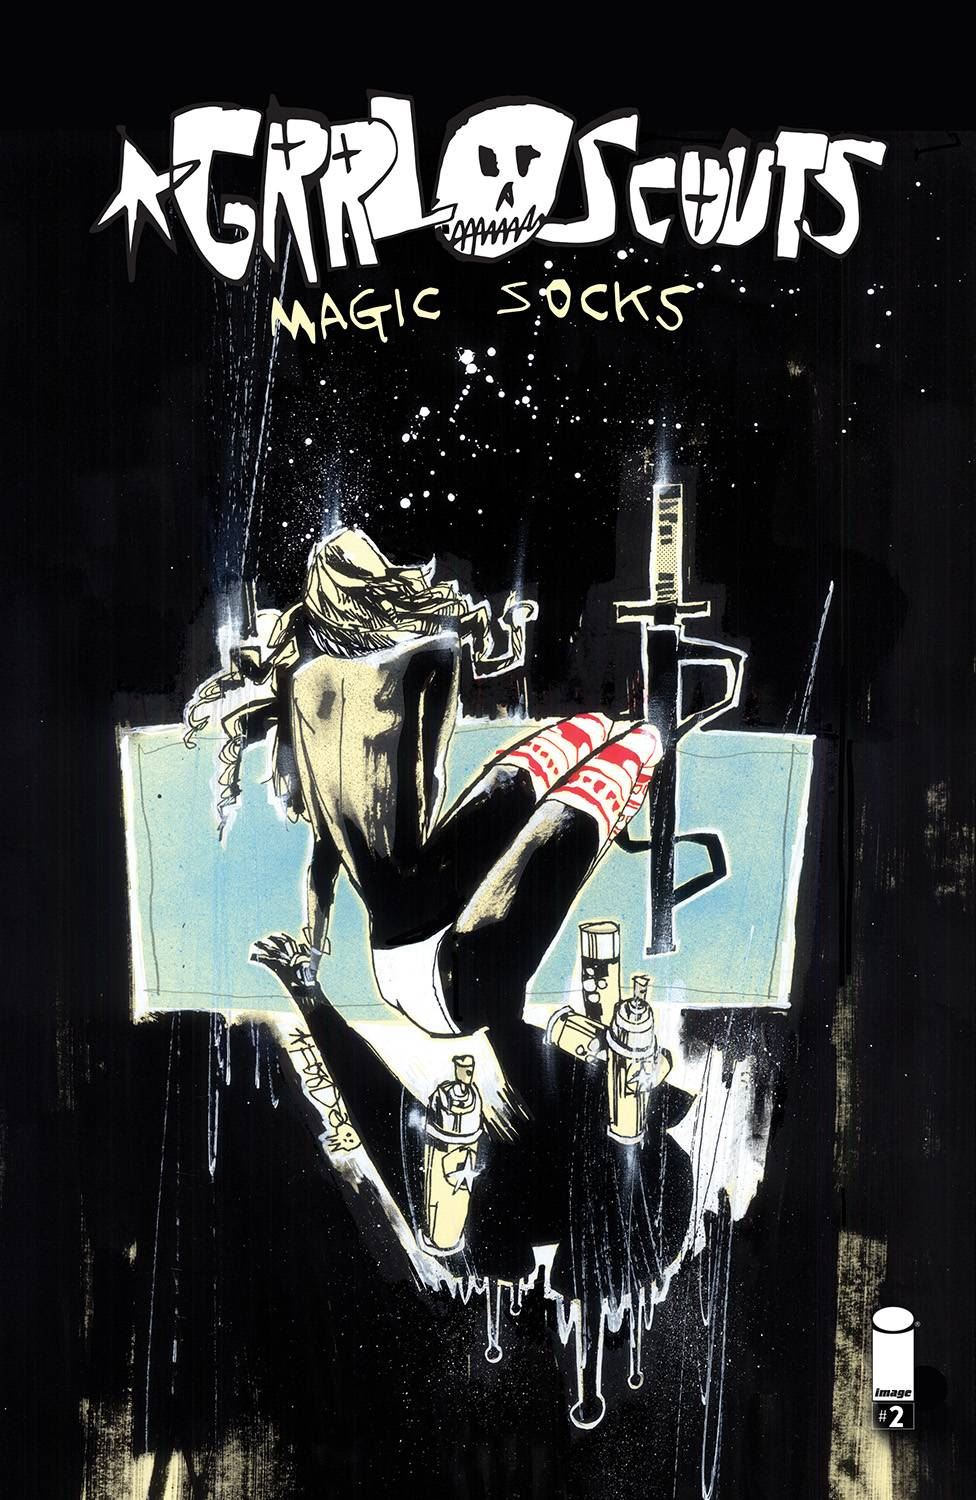 Grrl Scouts Magic Socks #2 (Cvr A Mahfood) Image Comics Comic Book